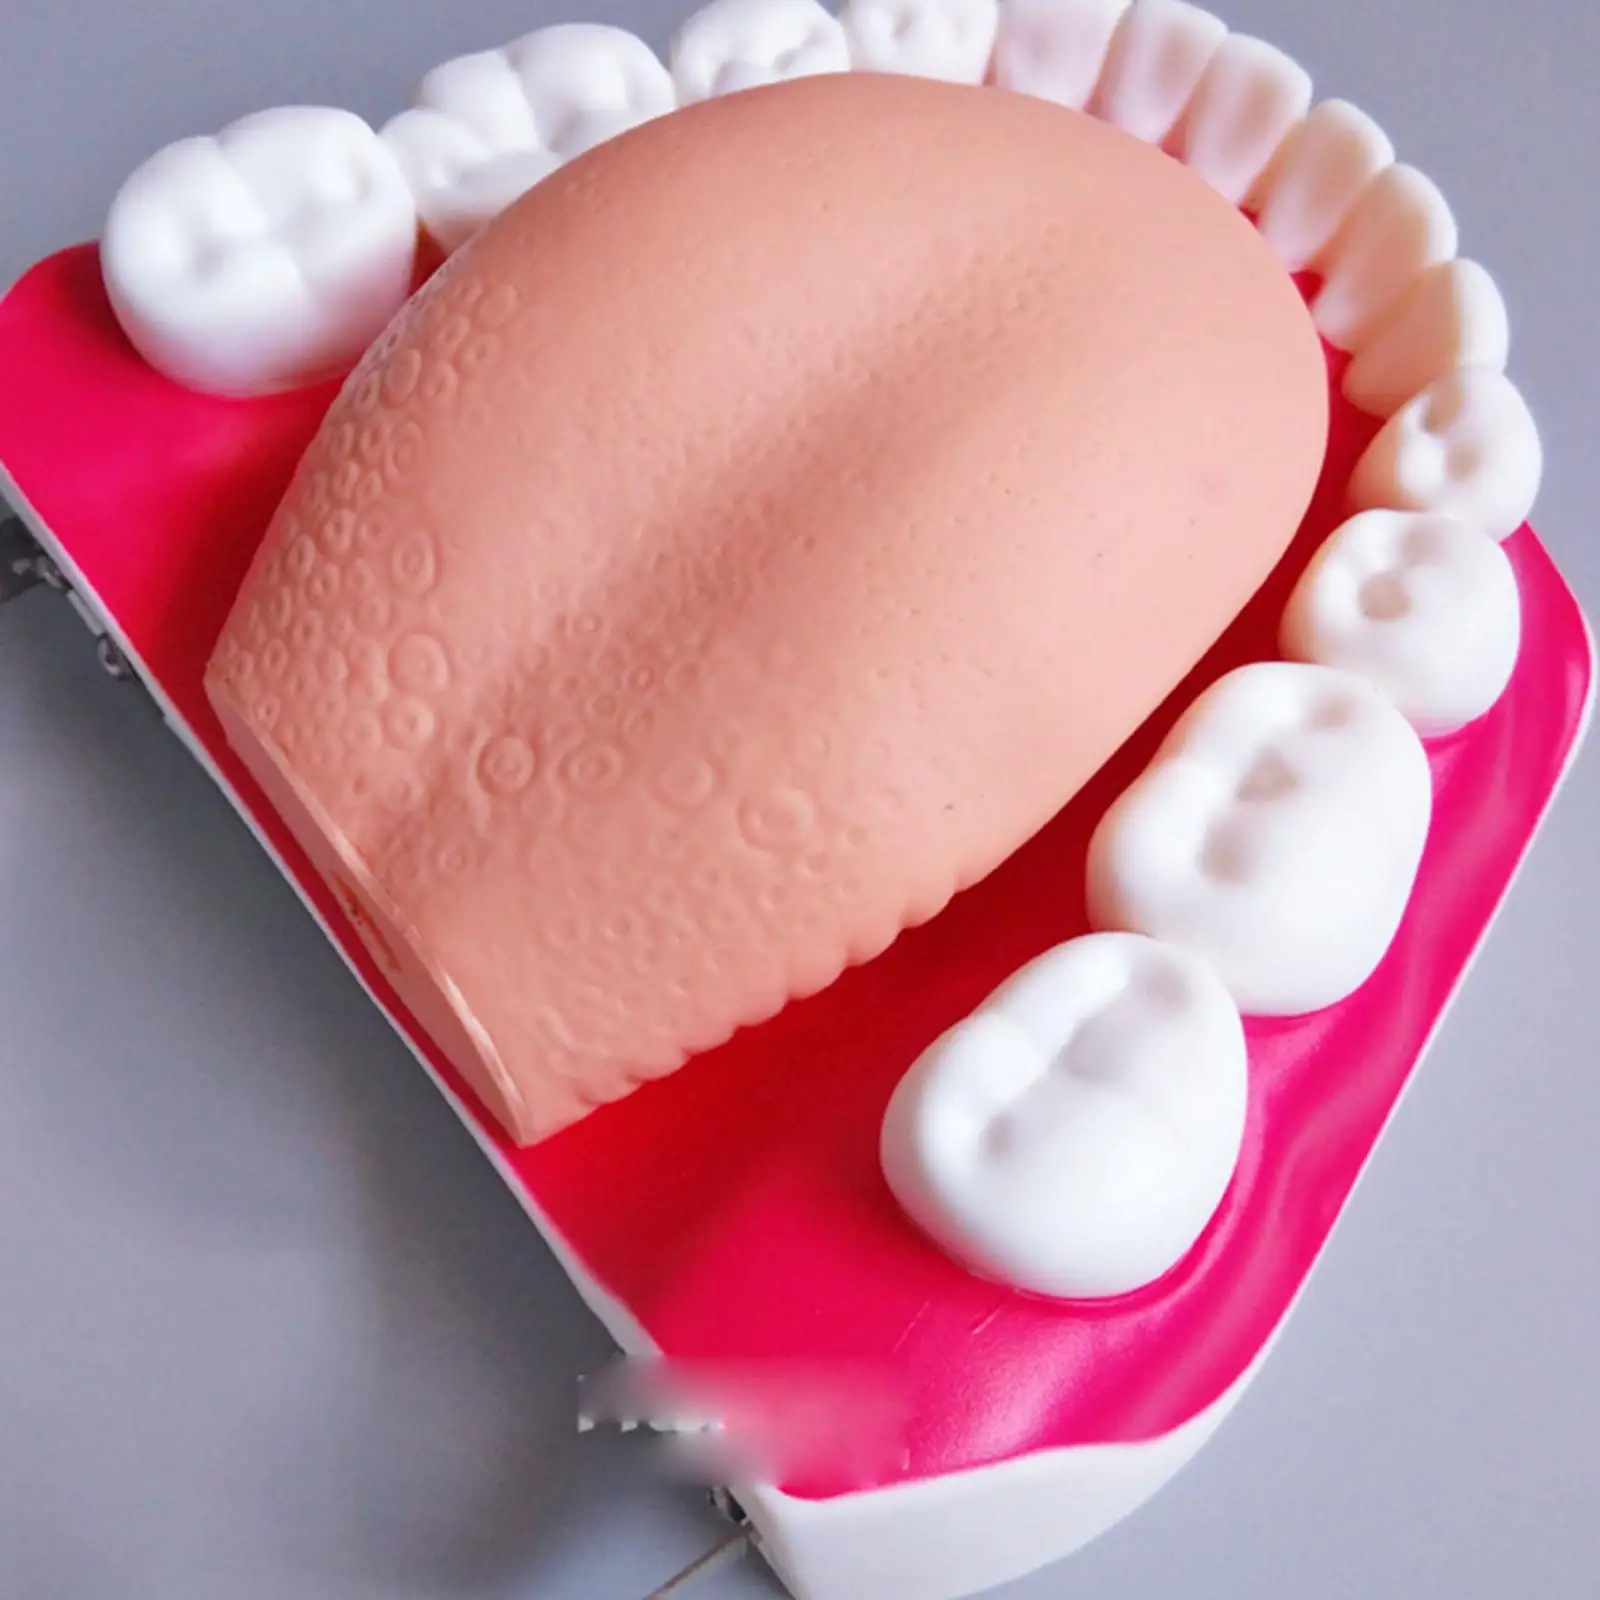 ПВХ с 3-кратным увеличением Стоматологический кабинет Обучение Чистке зубов Модель Обучения зубам - 2